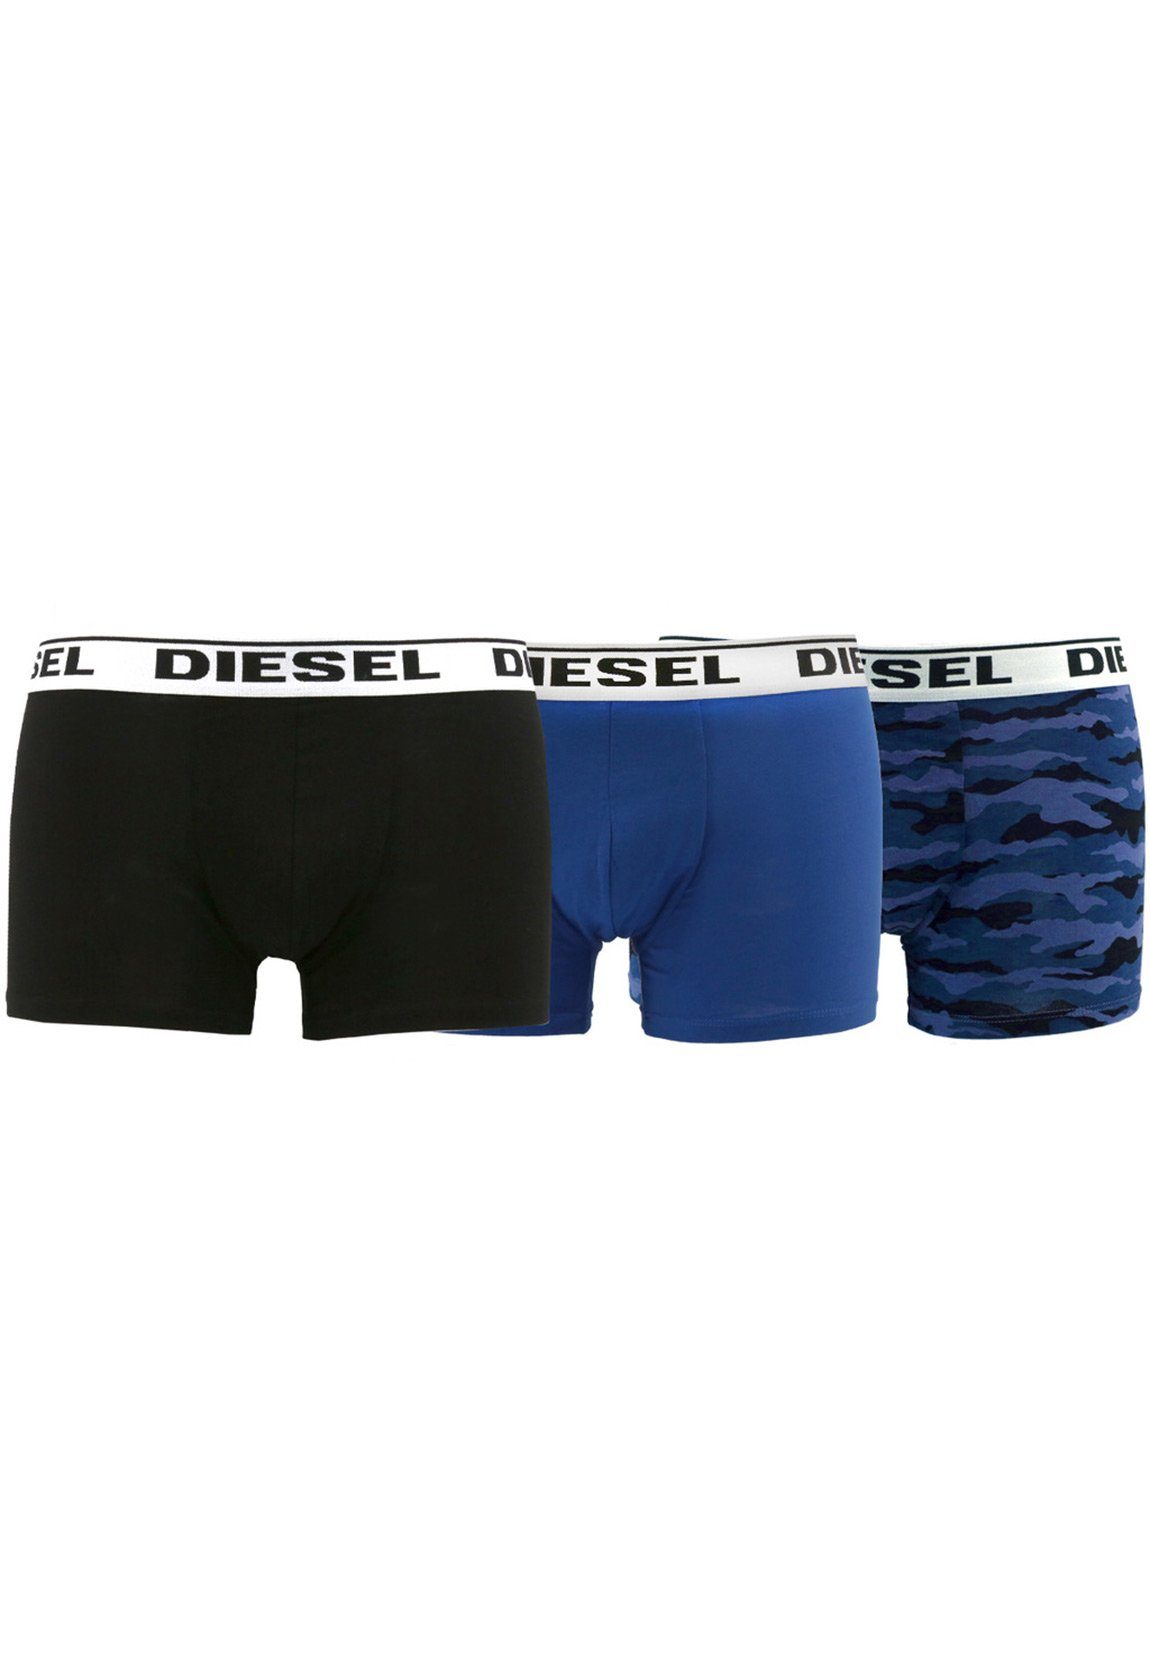 Diesel Boxershorts Diesel Herren Boxershorts Dreierpack KORY RHASO Schwarz Blau